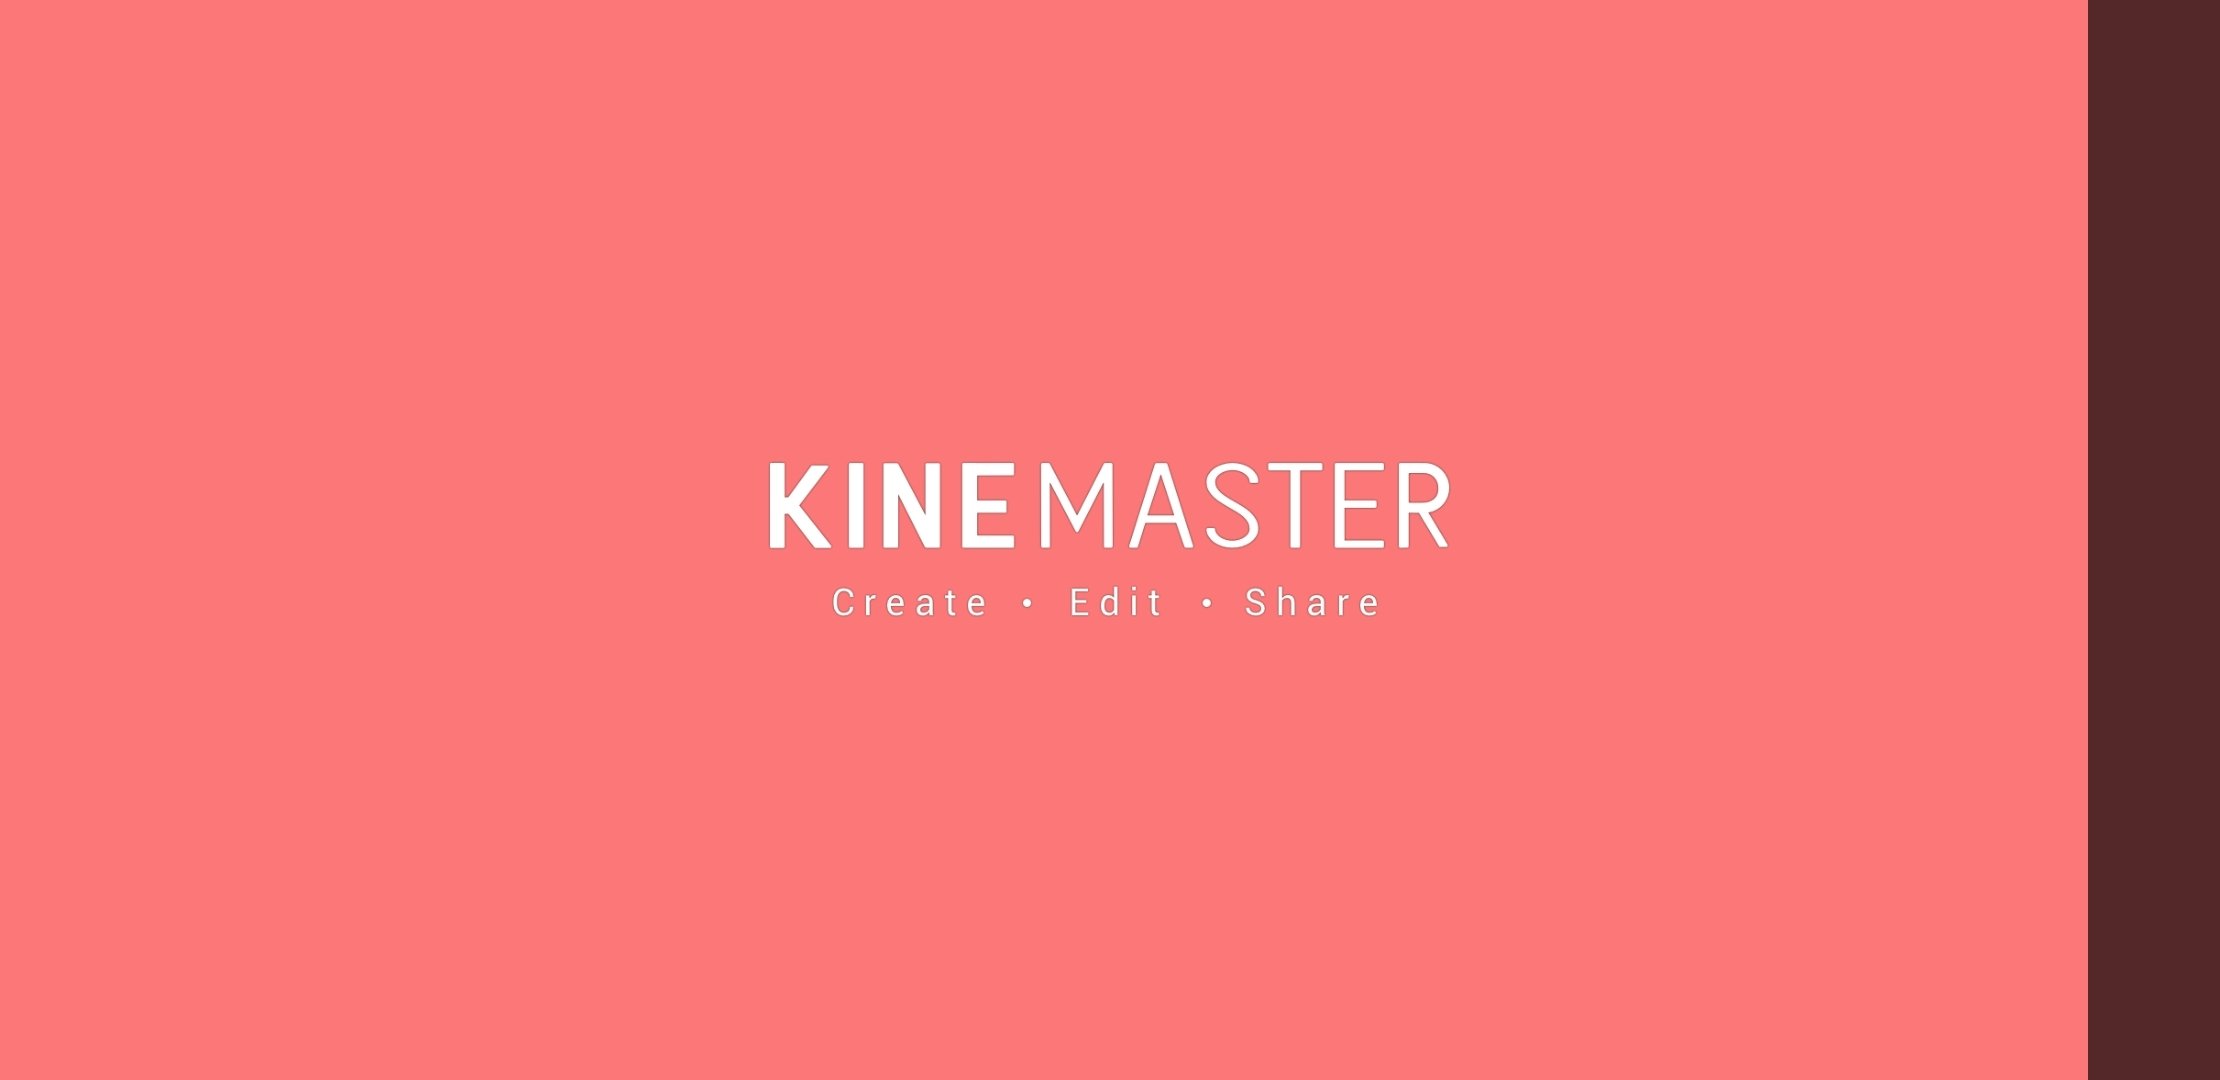 Pro App Free Download - 👉 Kinemaster Latest Mod Apk👈 Click For Download:  https://bit.ly/3oD4jDg | Facebook